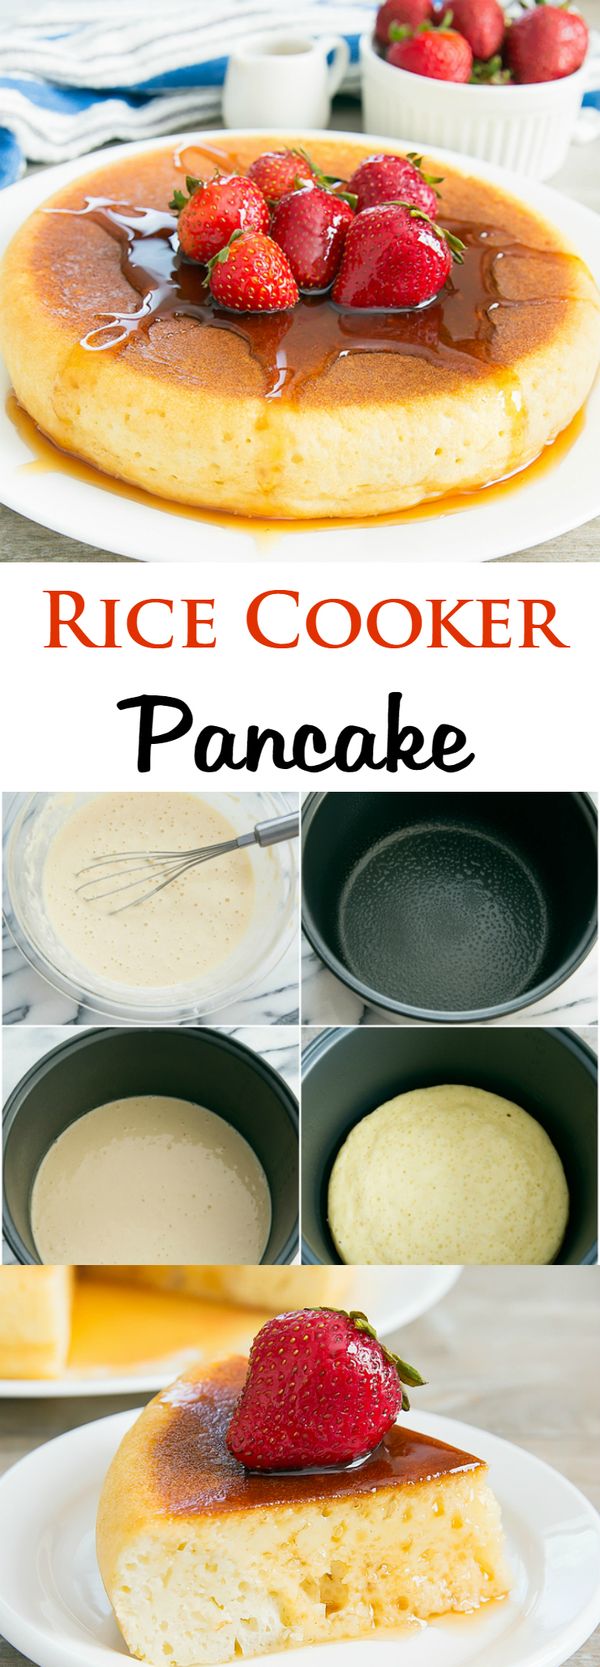 Rice Cooker Pancake